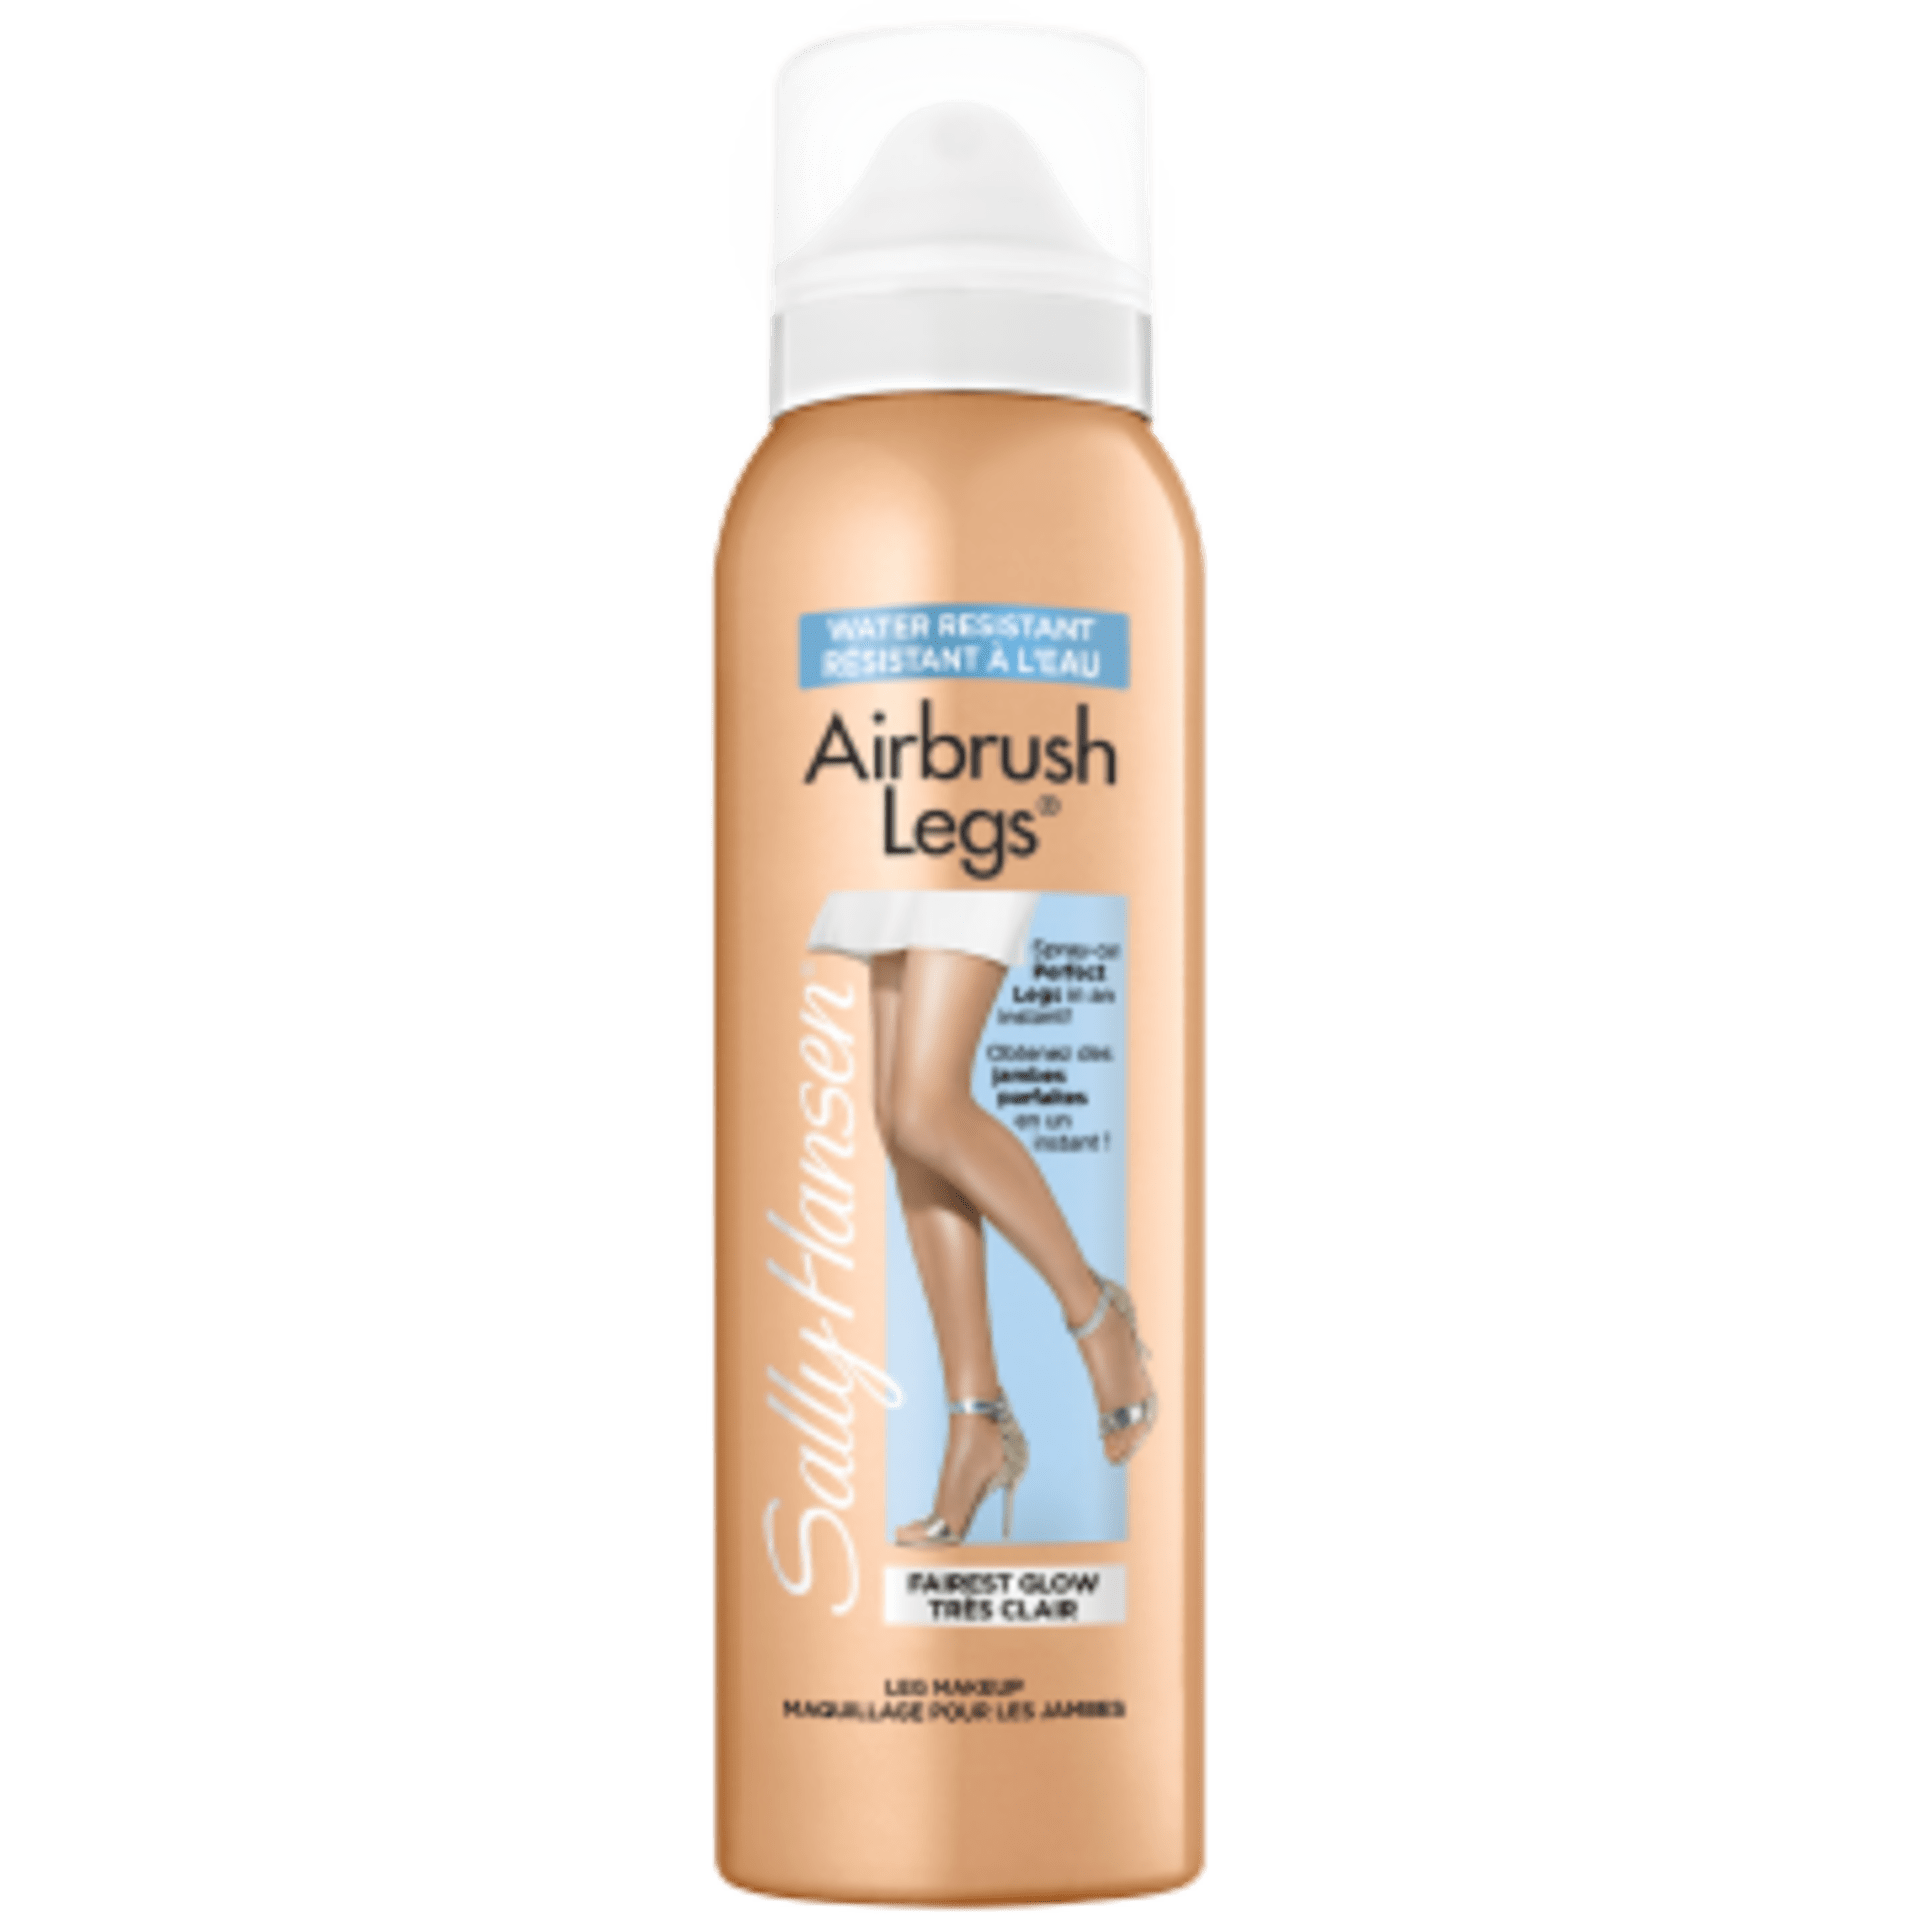 airbrush leg makeup